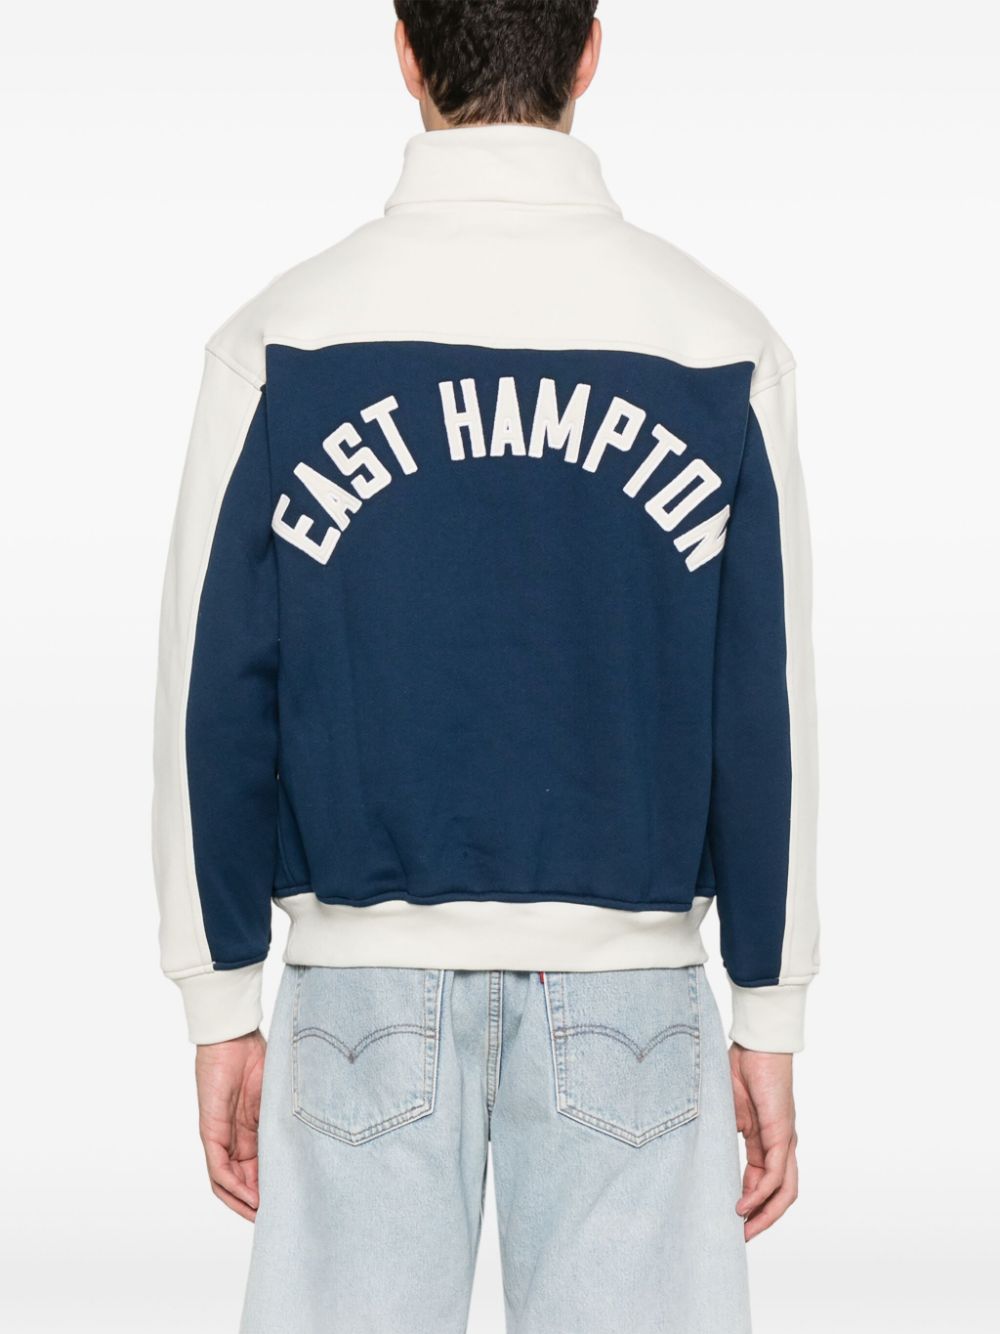 Shop Rhude Contrast Varsity Cotton Sweatshirt In Blue